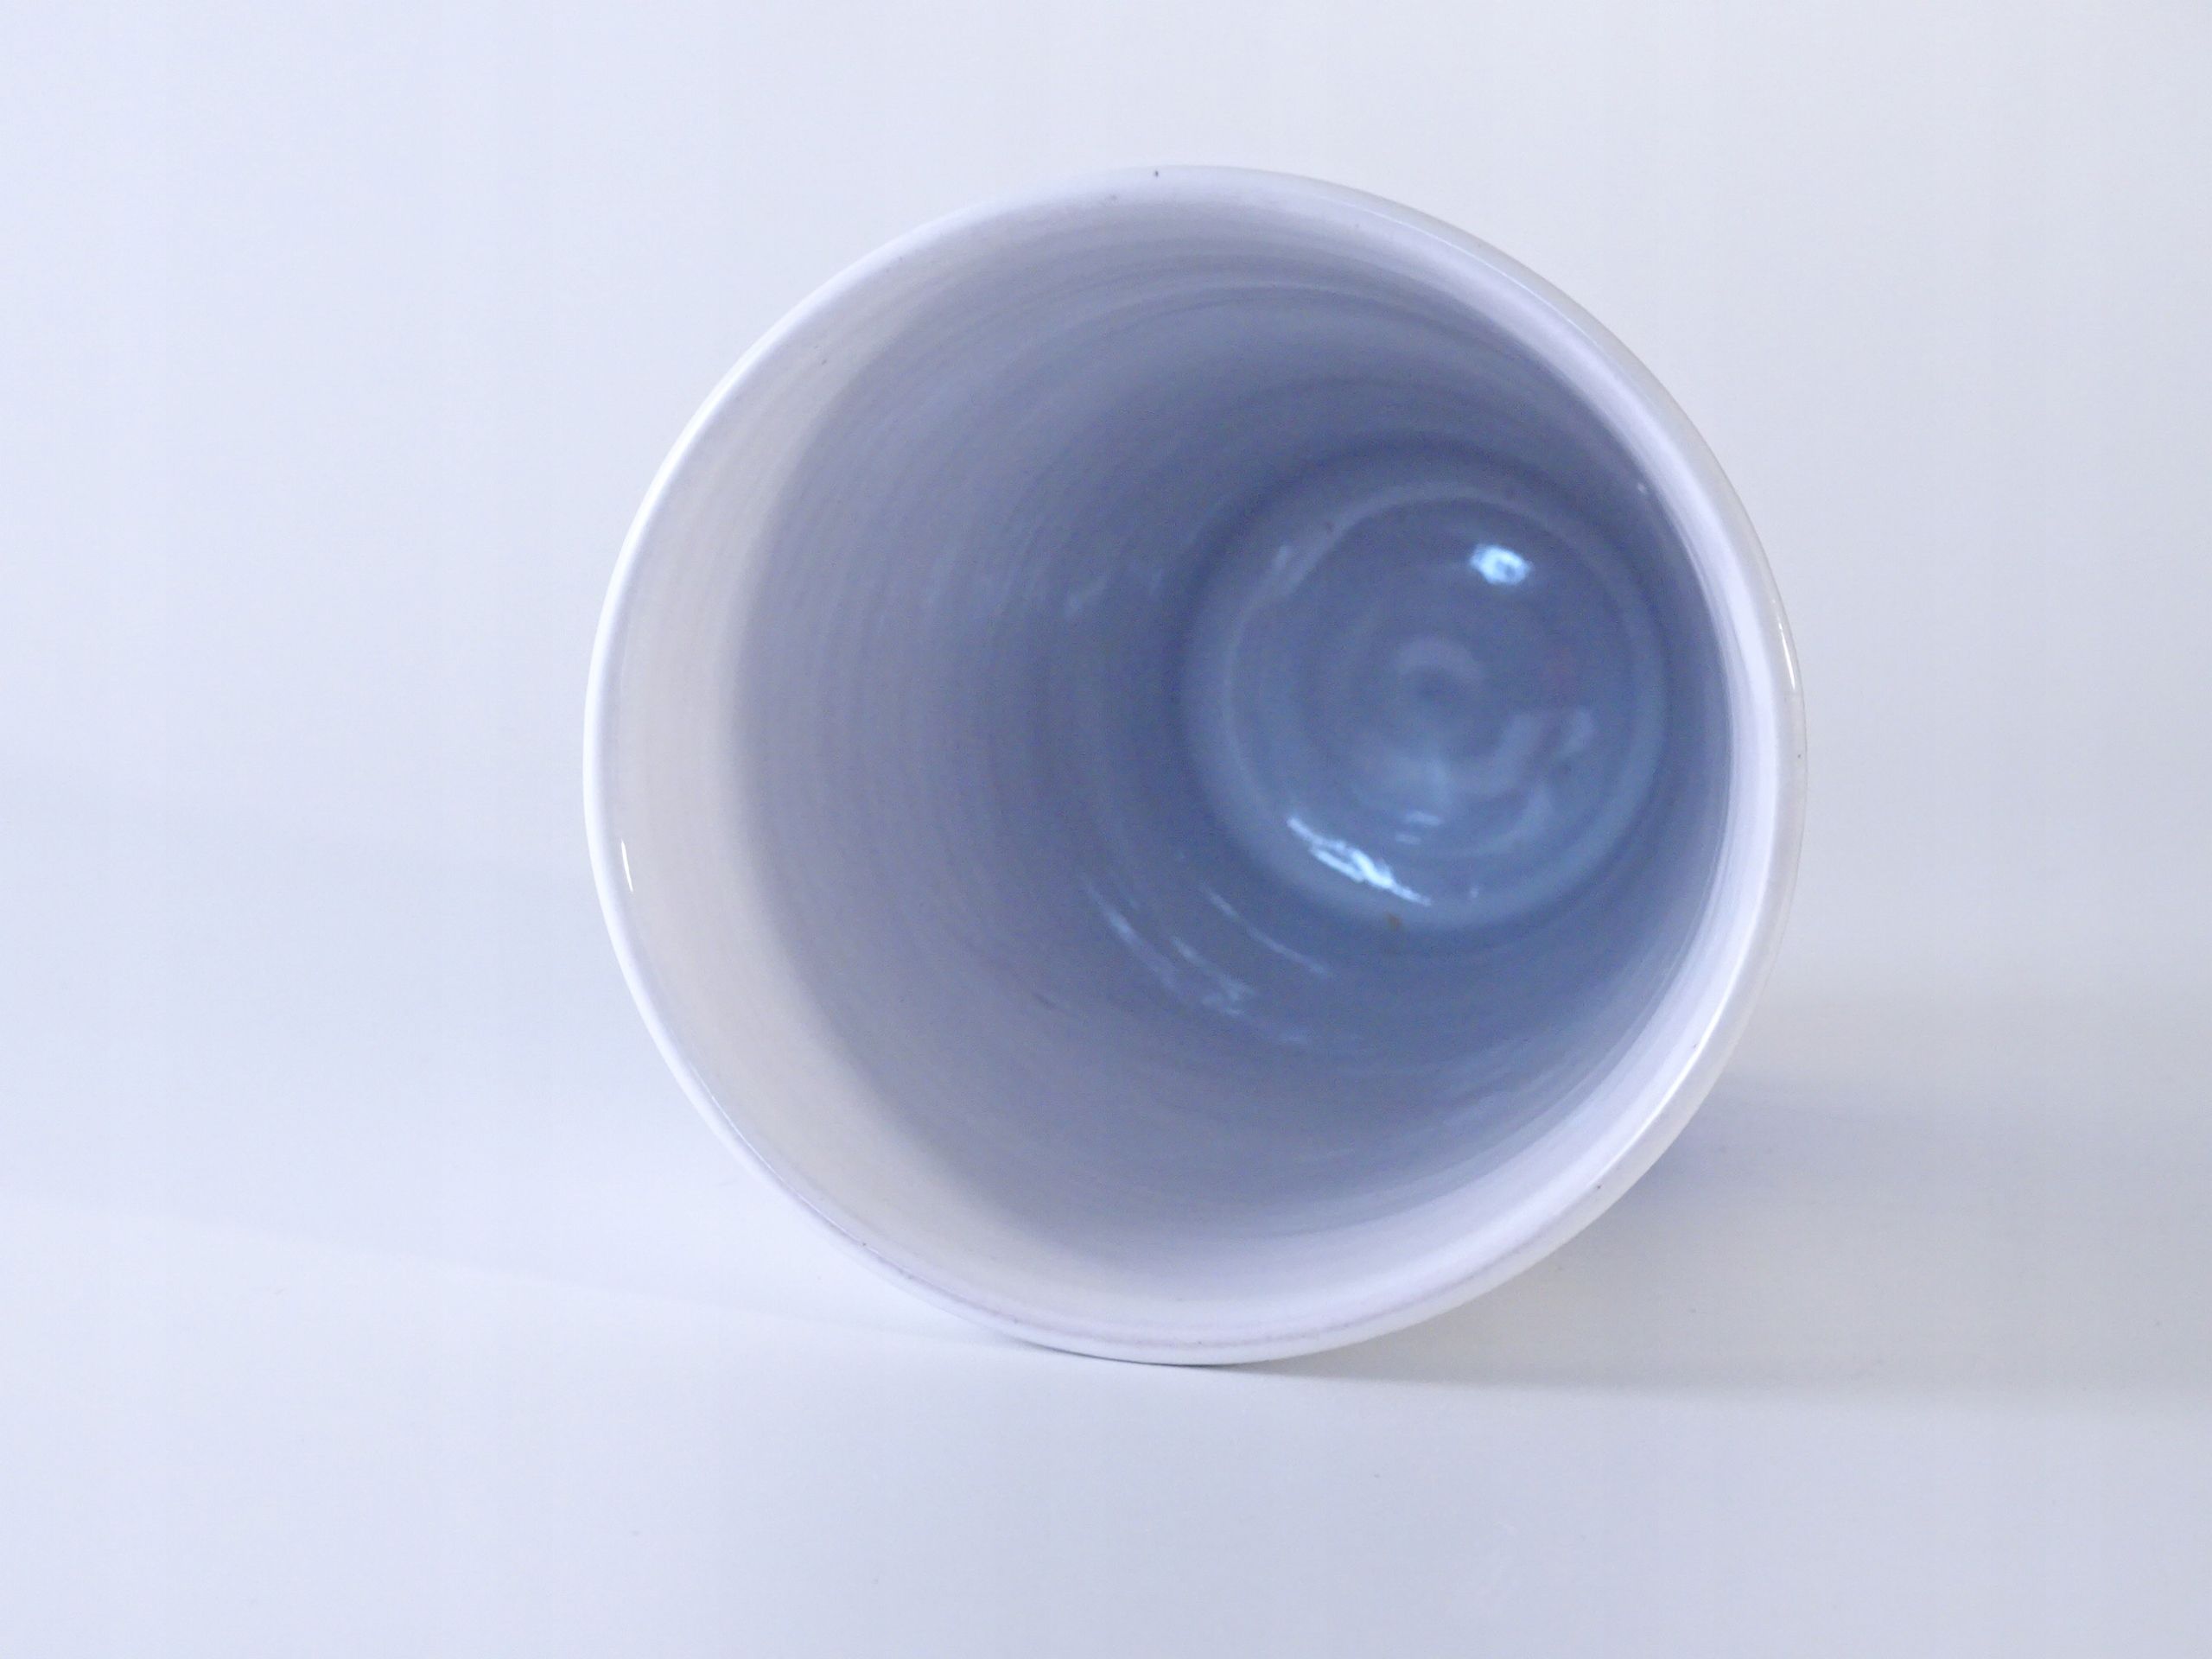 piękny autorski wazon ceramiczny